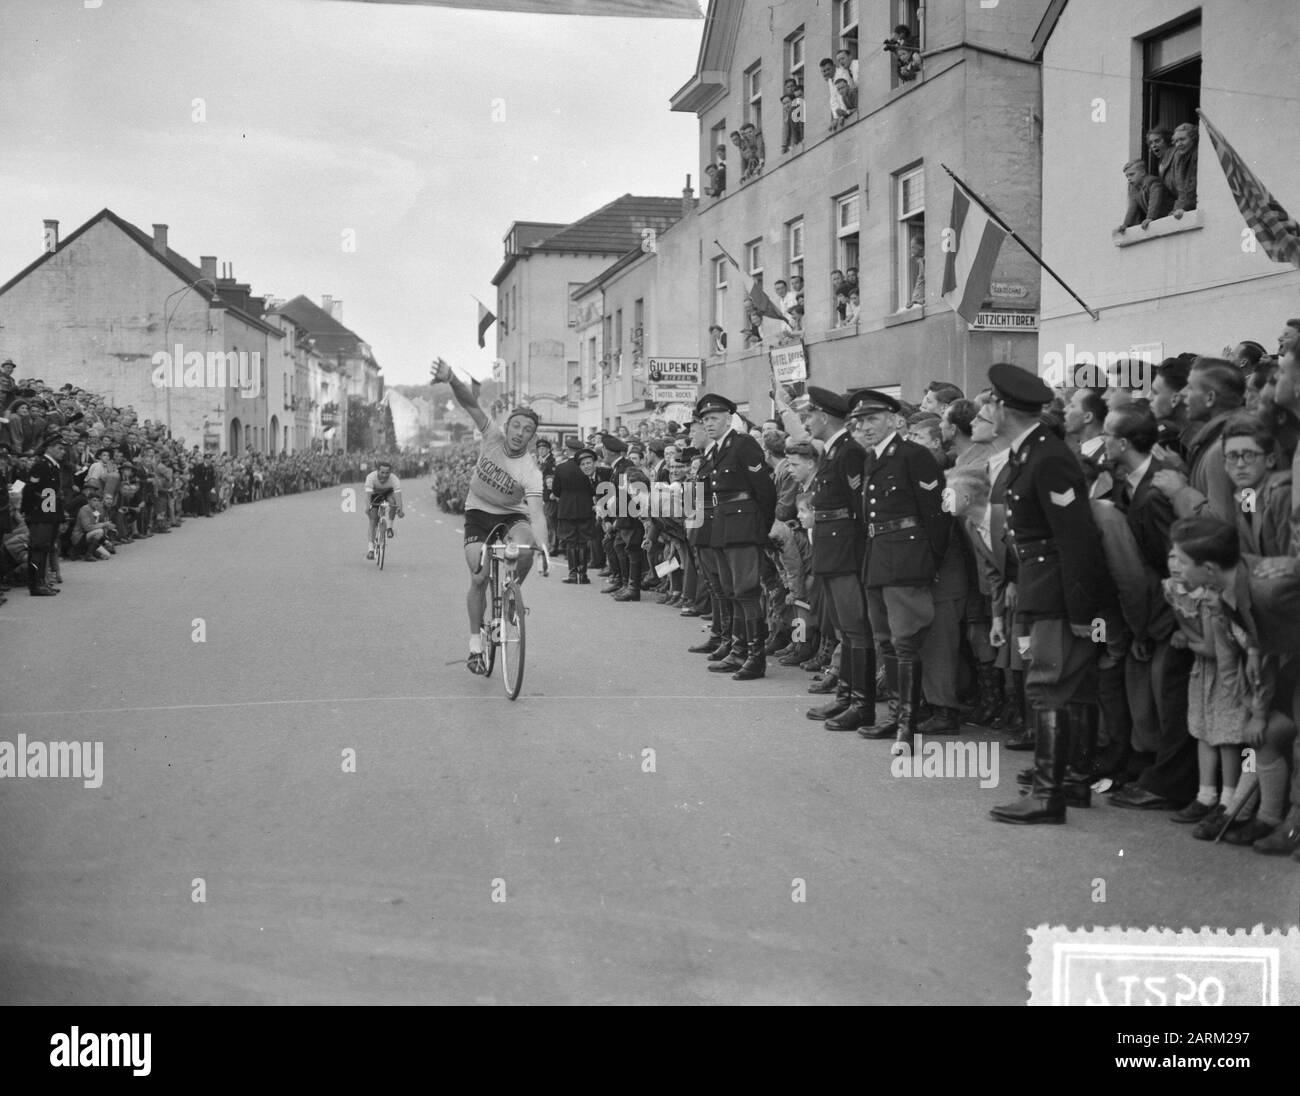 Campionato ciclistico sulla strada Valkenburg U. Roks finitura Data: 8 maggio 1955 posizione: Limburg, Valkenburg Parole Chiave: Campionato ciclistico Nome personale: U. Roks Foto Stock